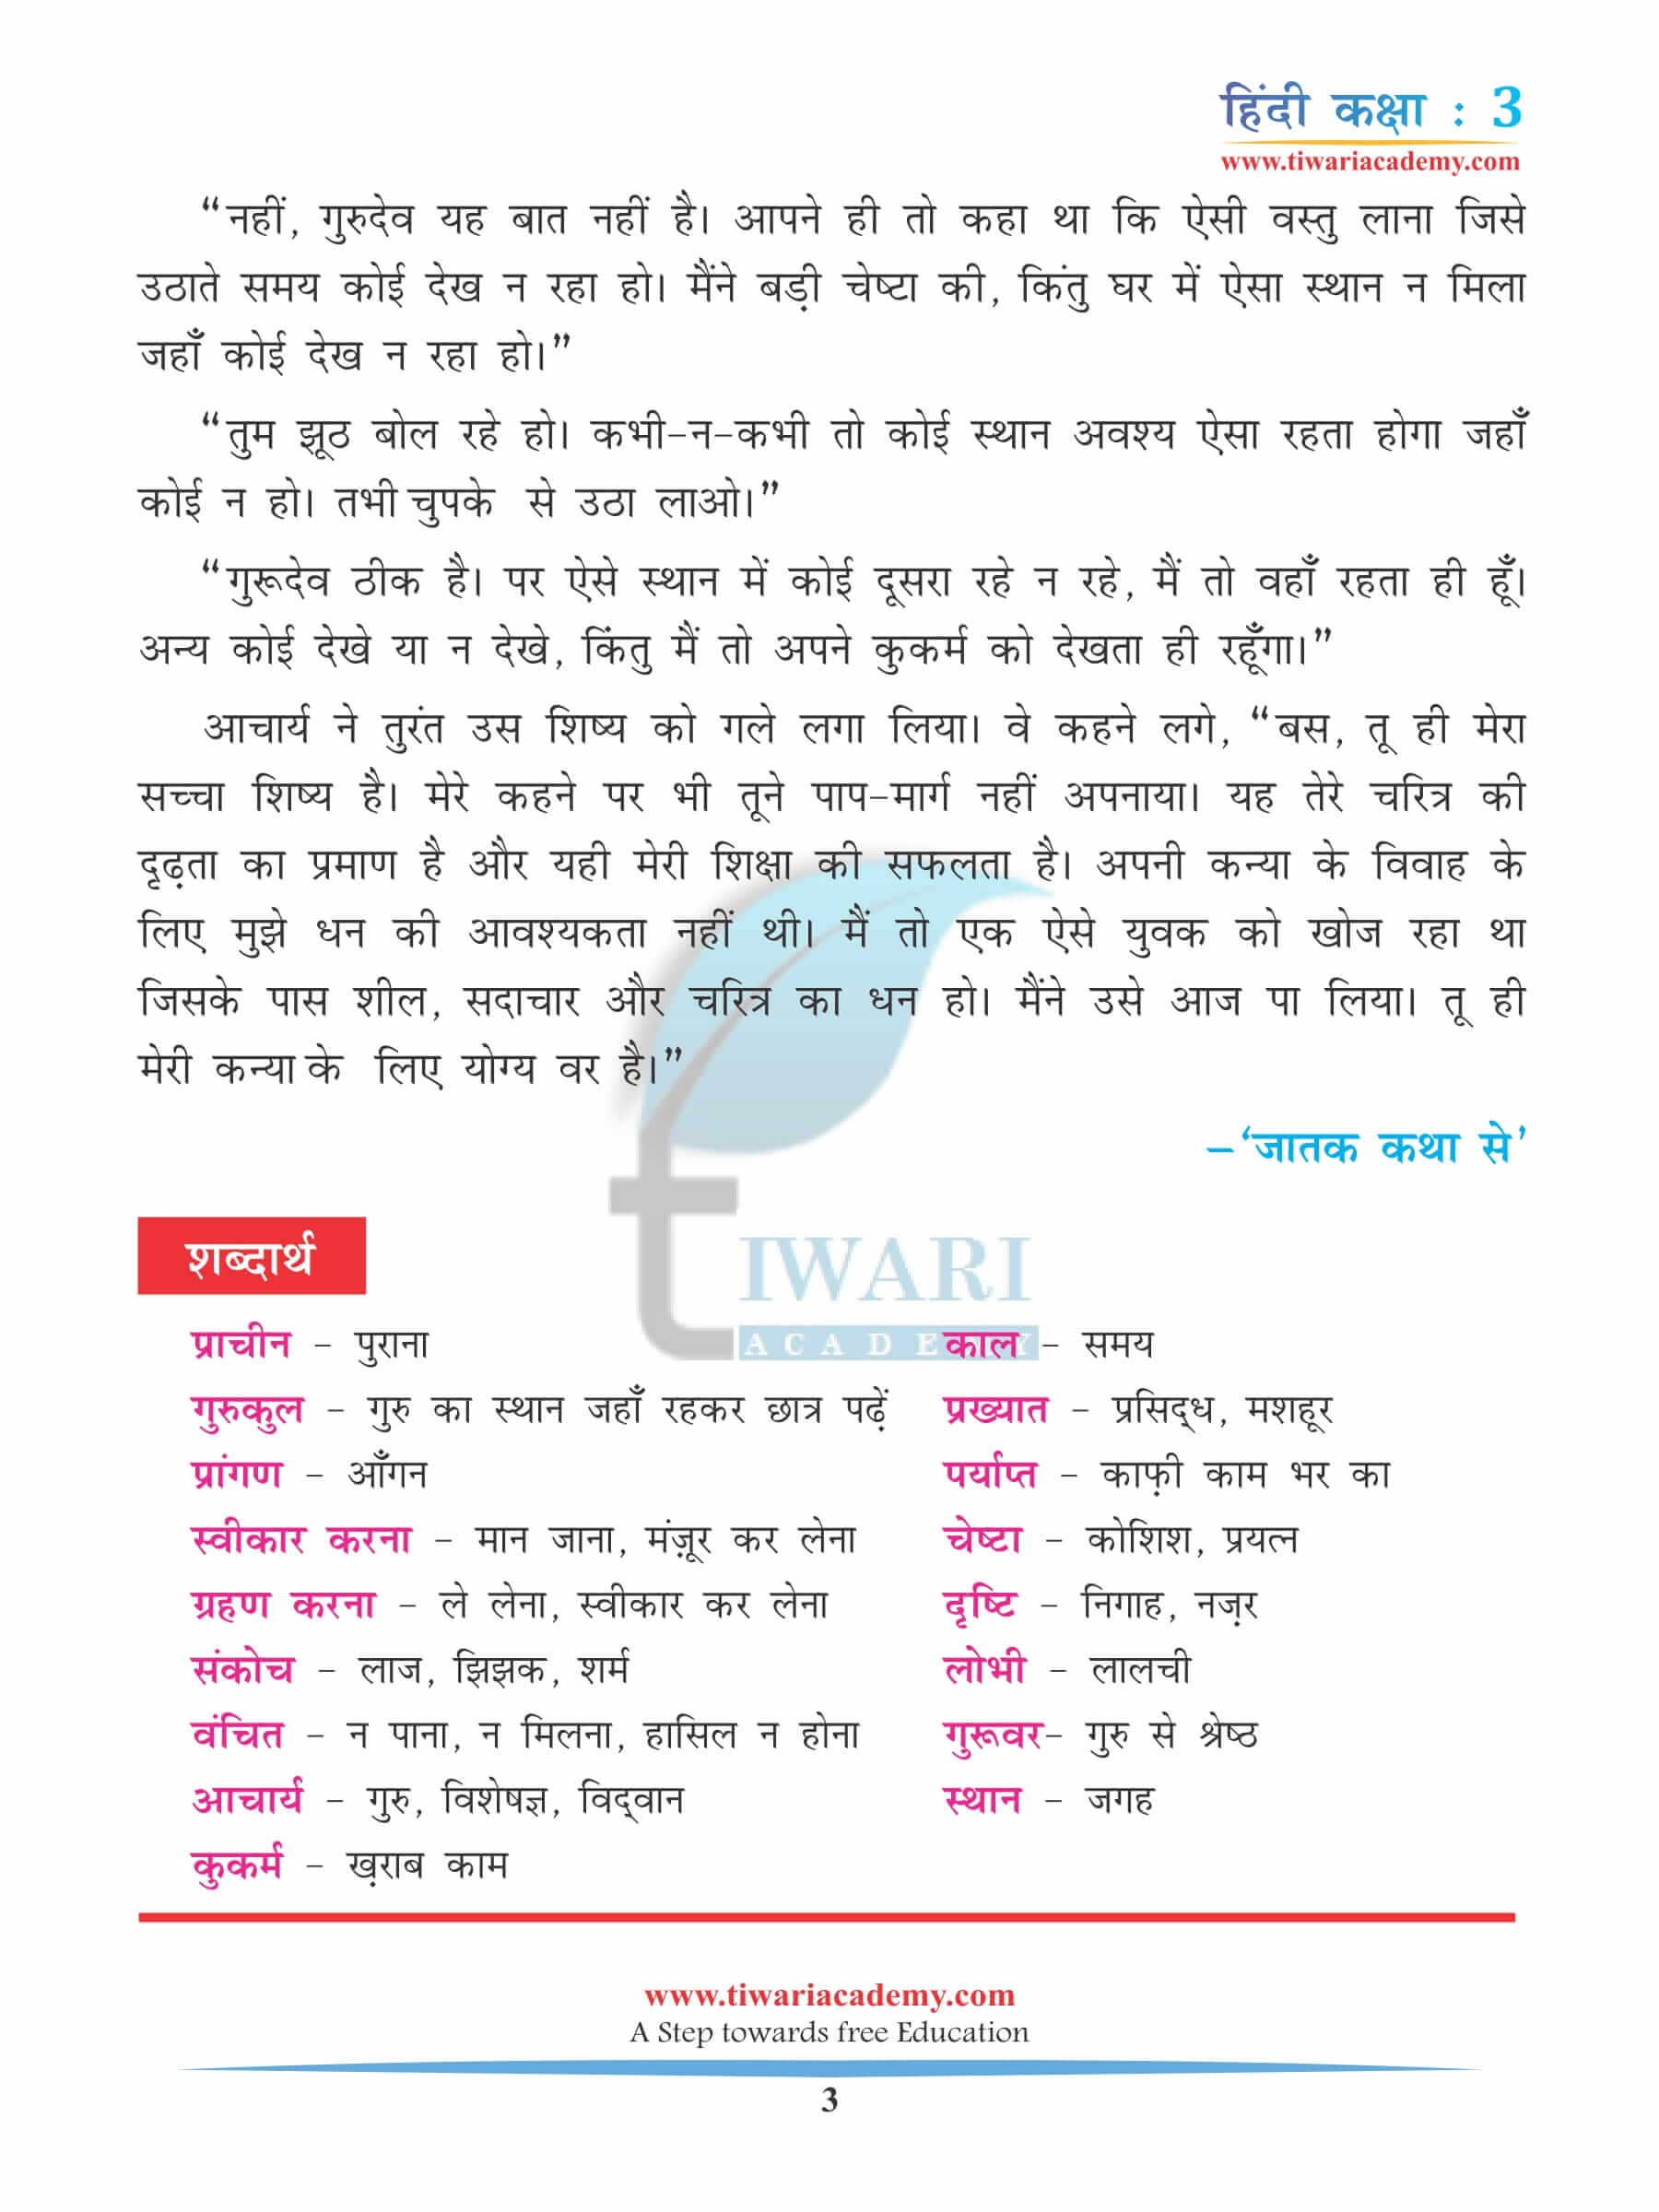 कक्षा 3 हिंदी अध्याय 11 अभ्यास के लिए किताब